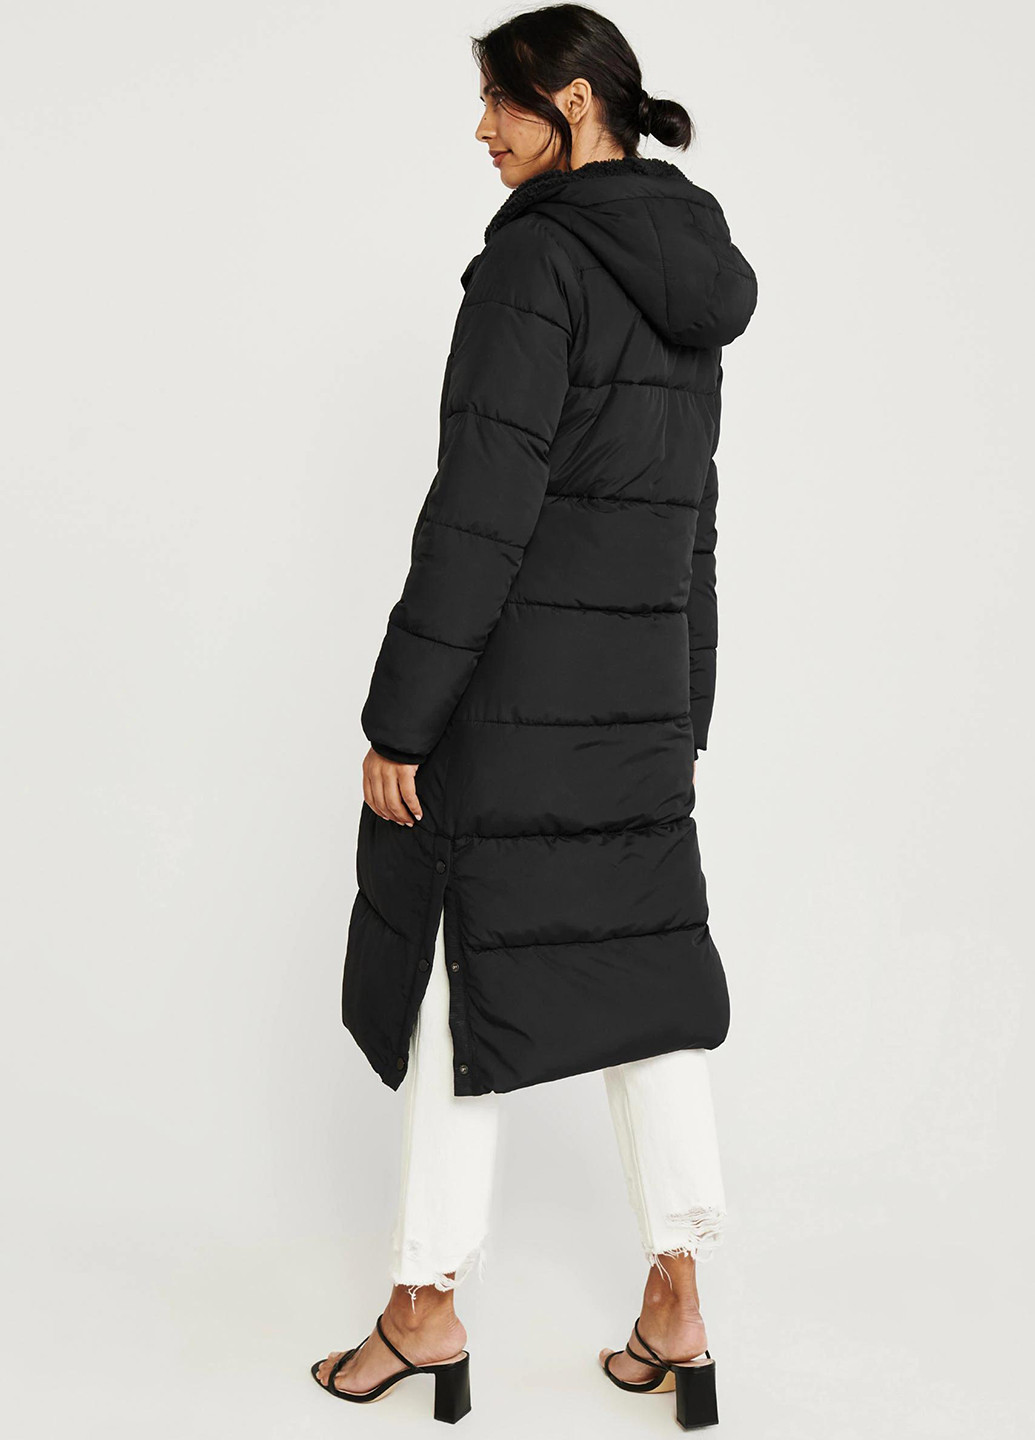 Чорна зимня куртка Abercrombie & Fitch